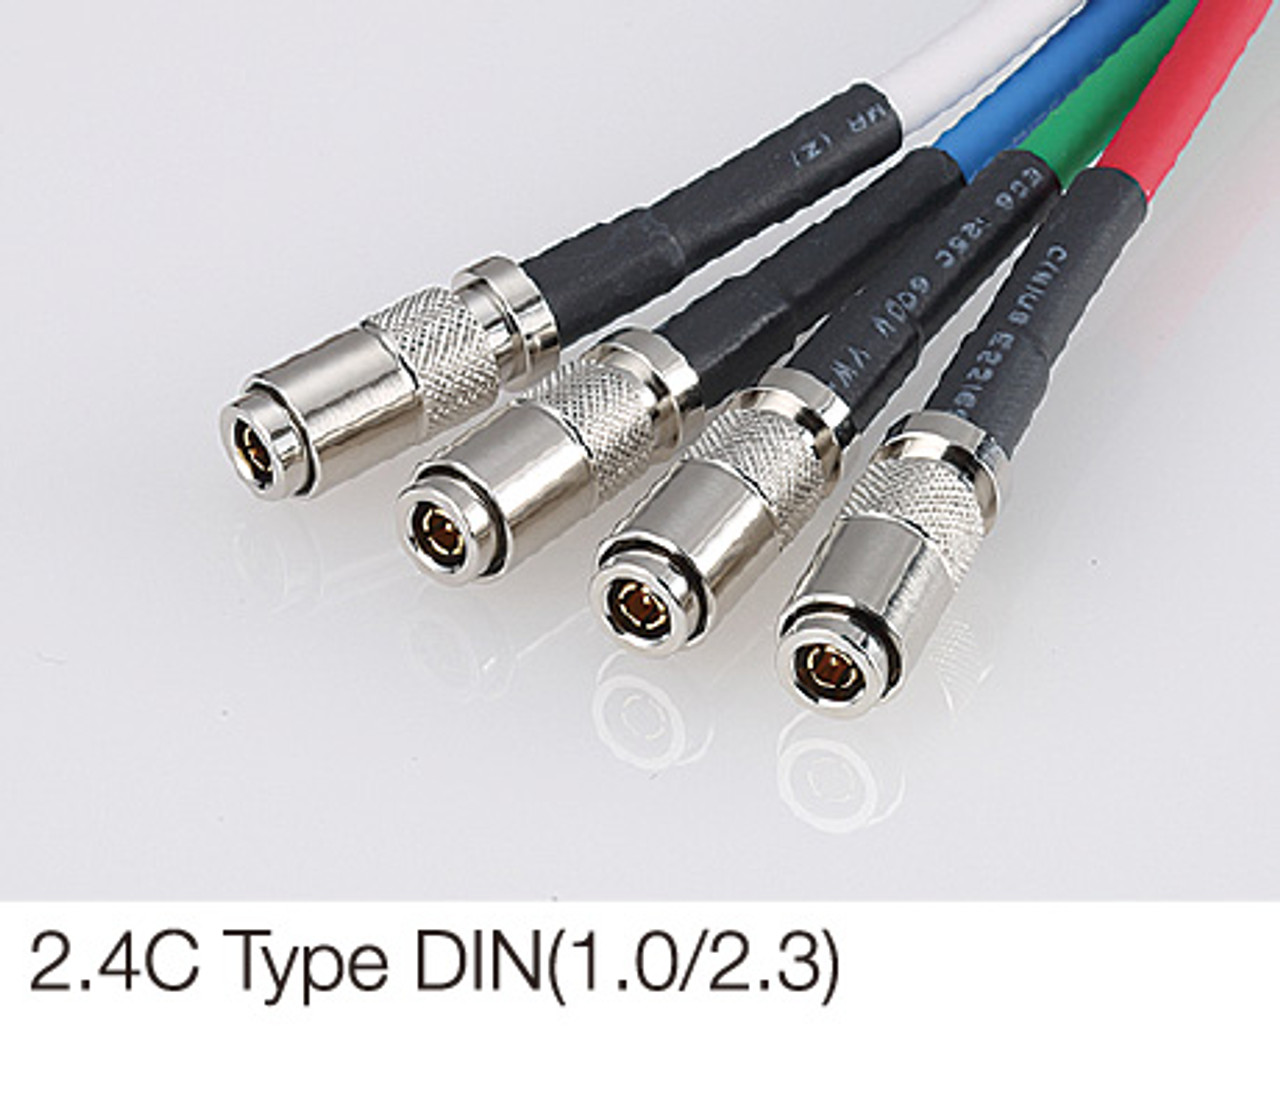 CoaXPress (CXP) 2.4C DIN 1.0/2.3 Quad Connector CXP Cables